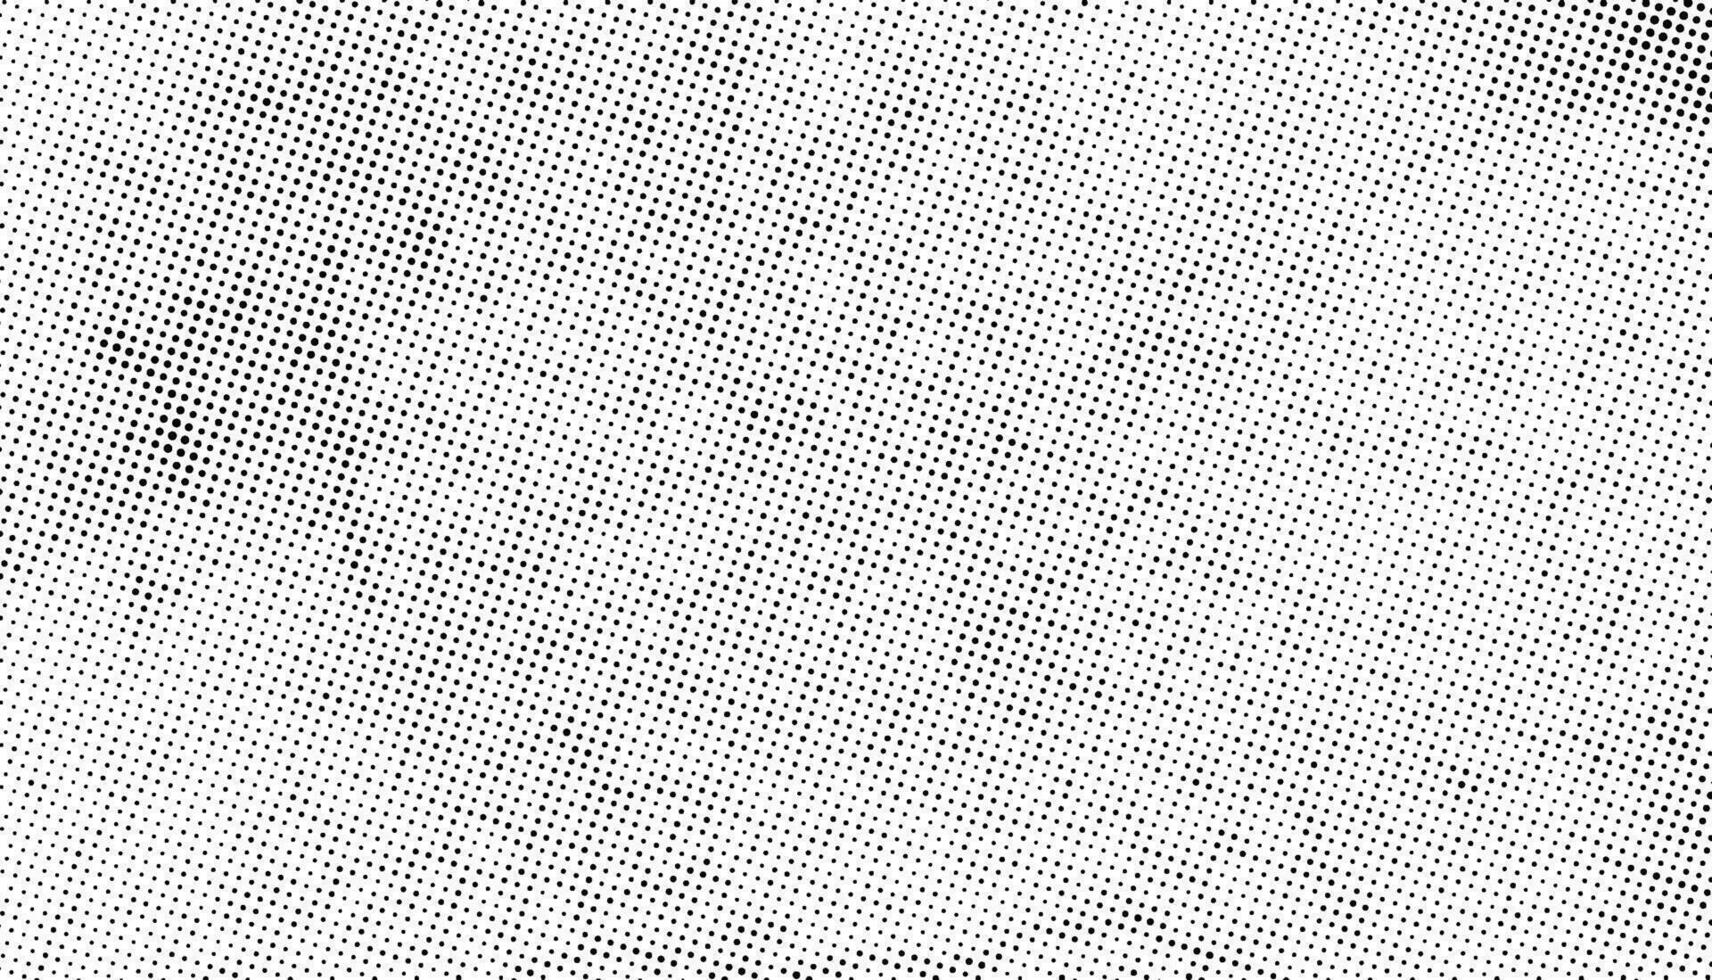 halftone punt patroon achtergrond vector, een reeks van vier verschillend abstract dots patronen, een zwart en wit tekening helling dots effect, grunge effect met ronde cirkel dol op structuur vector